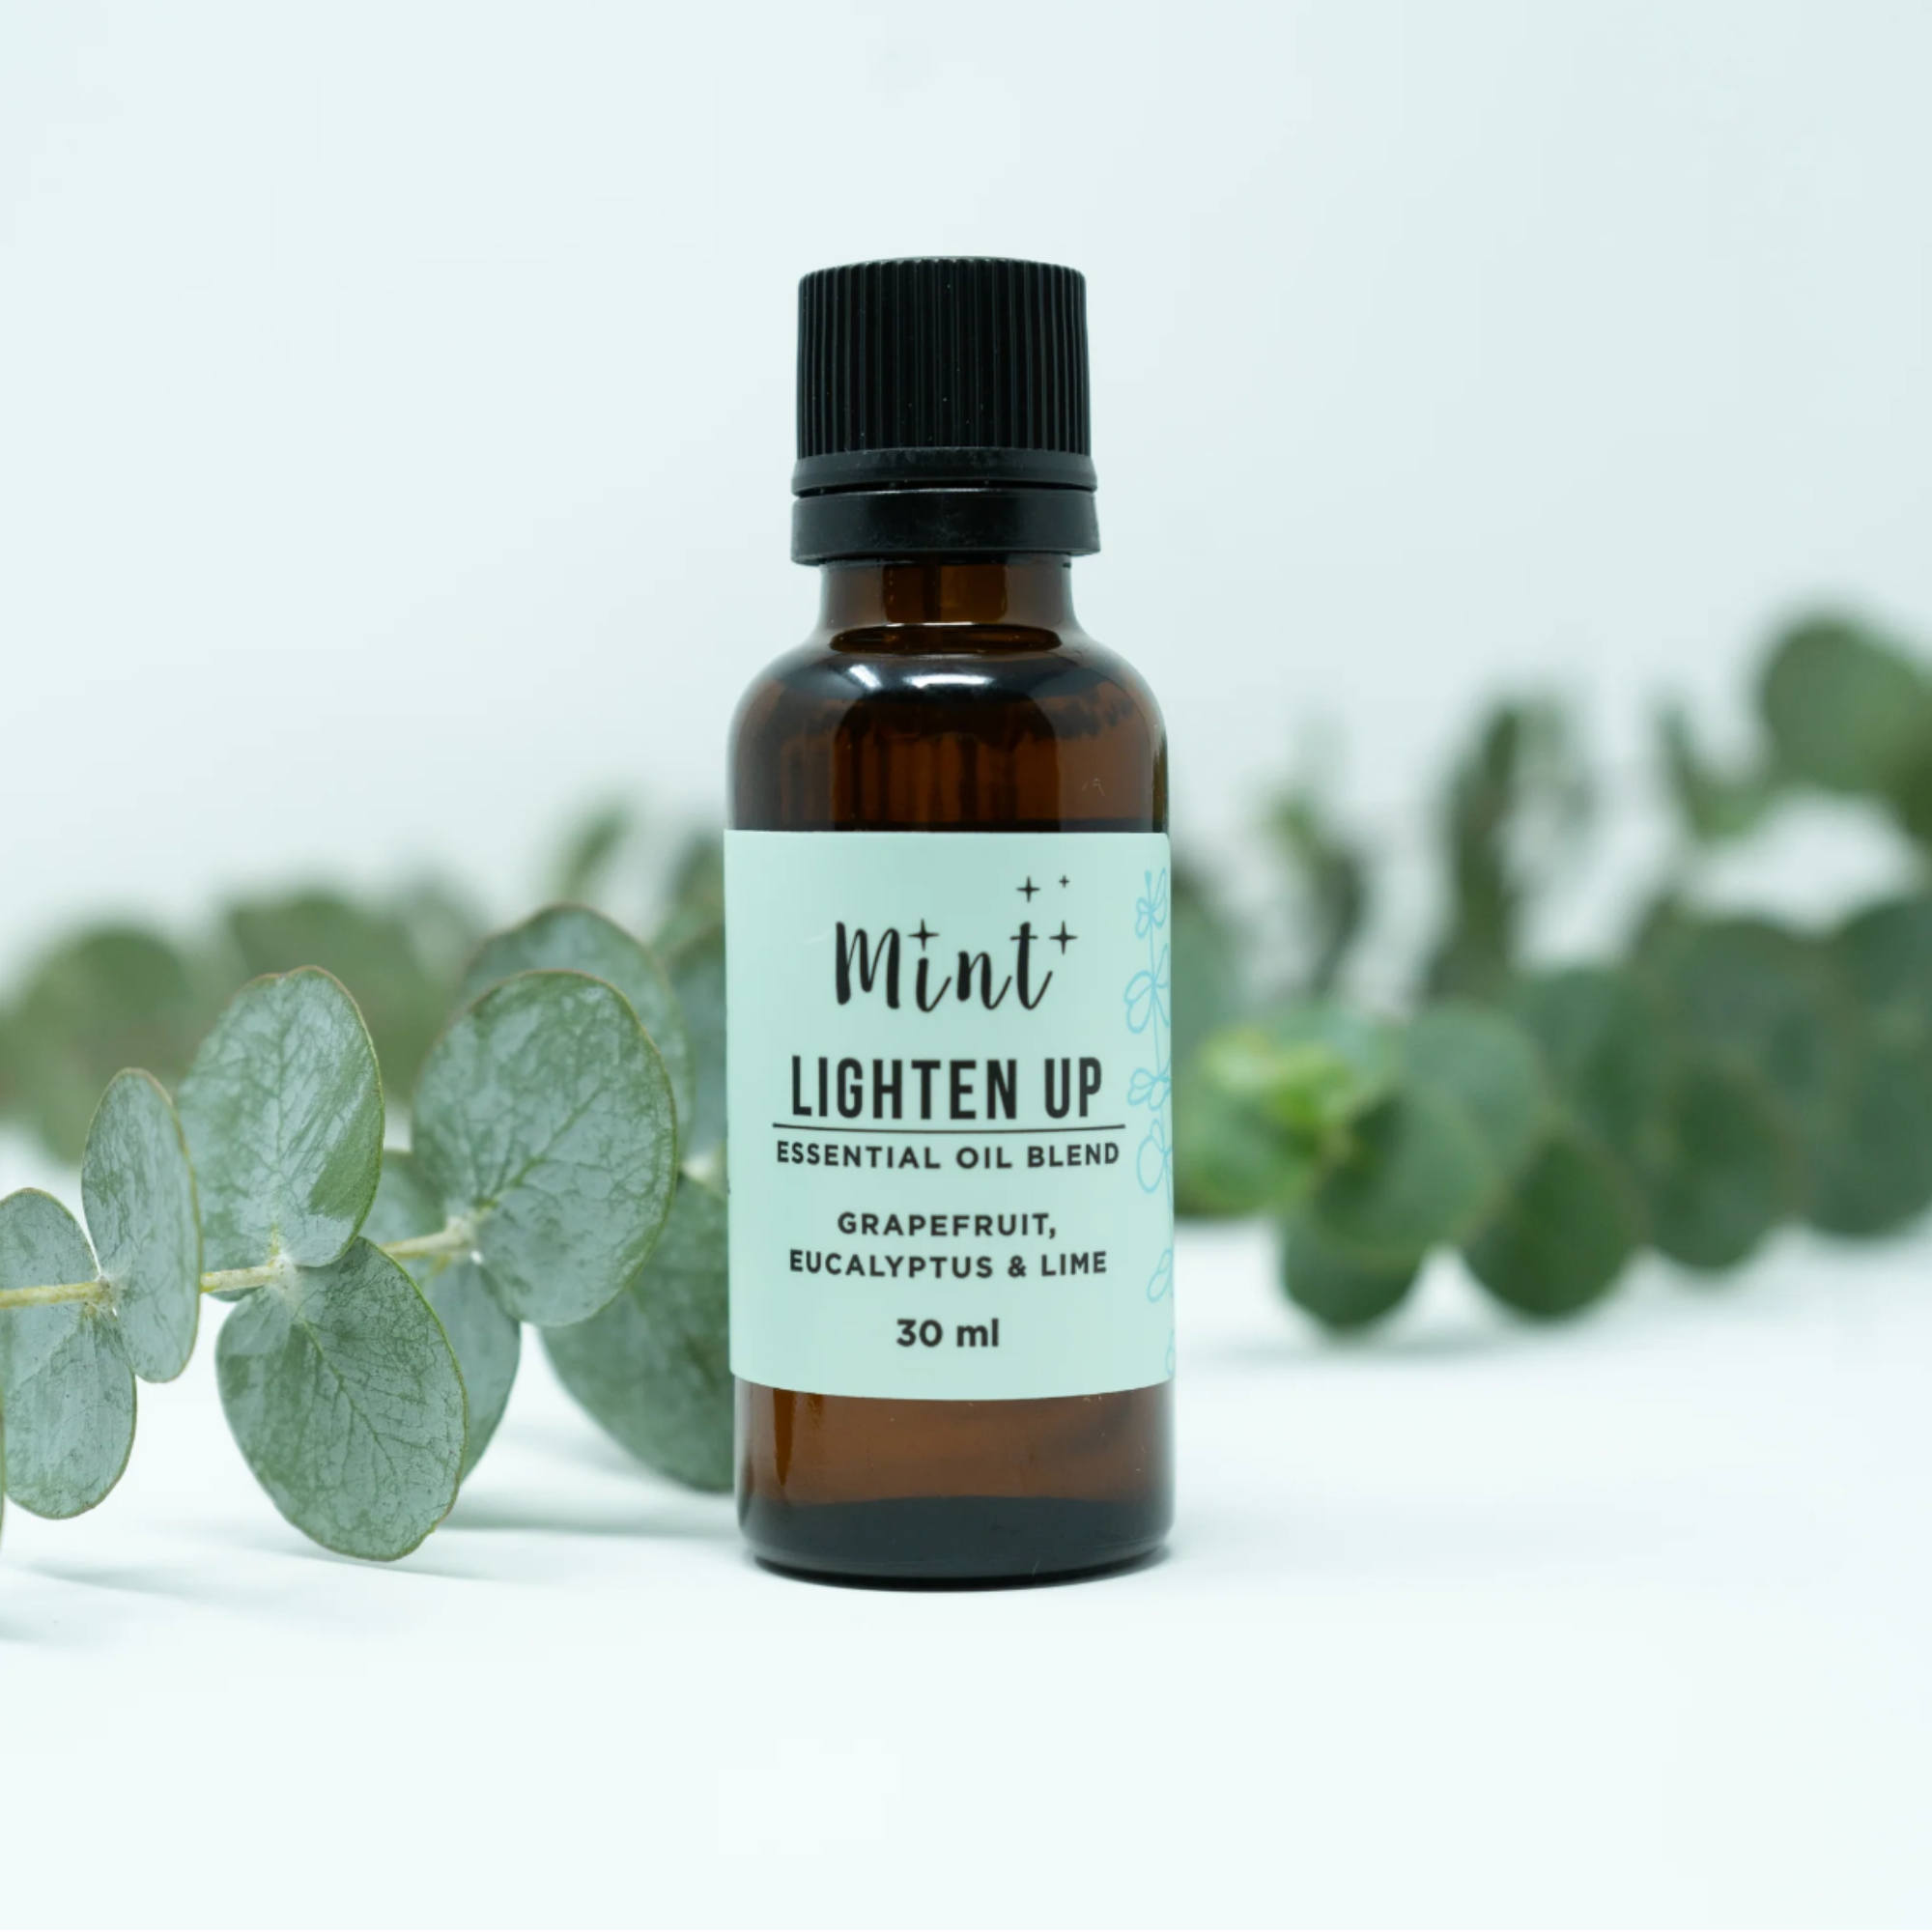 Mint Essential Oil Blend - Lighten Up